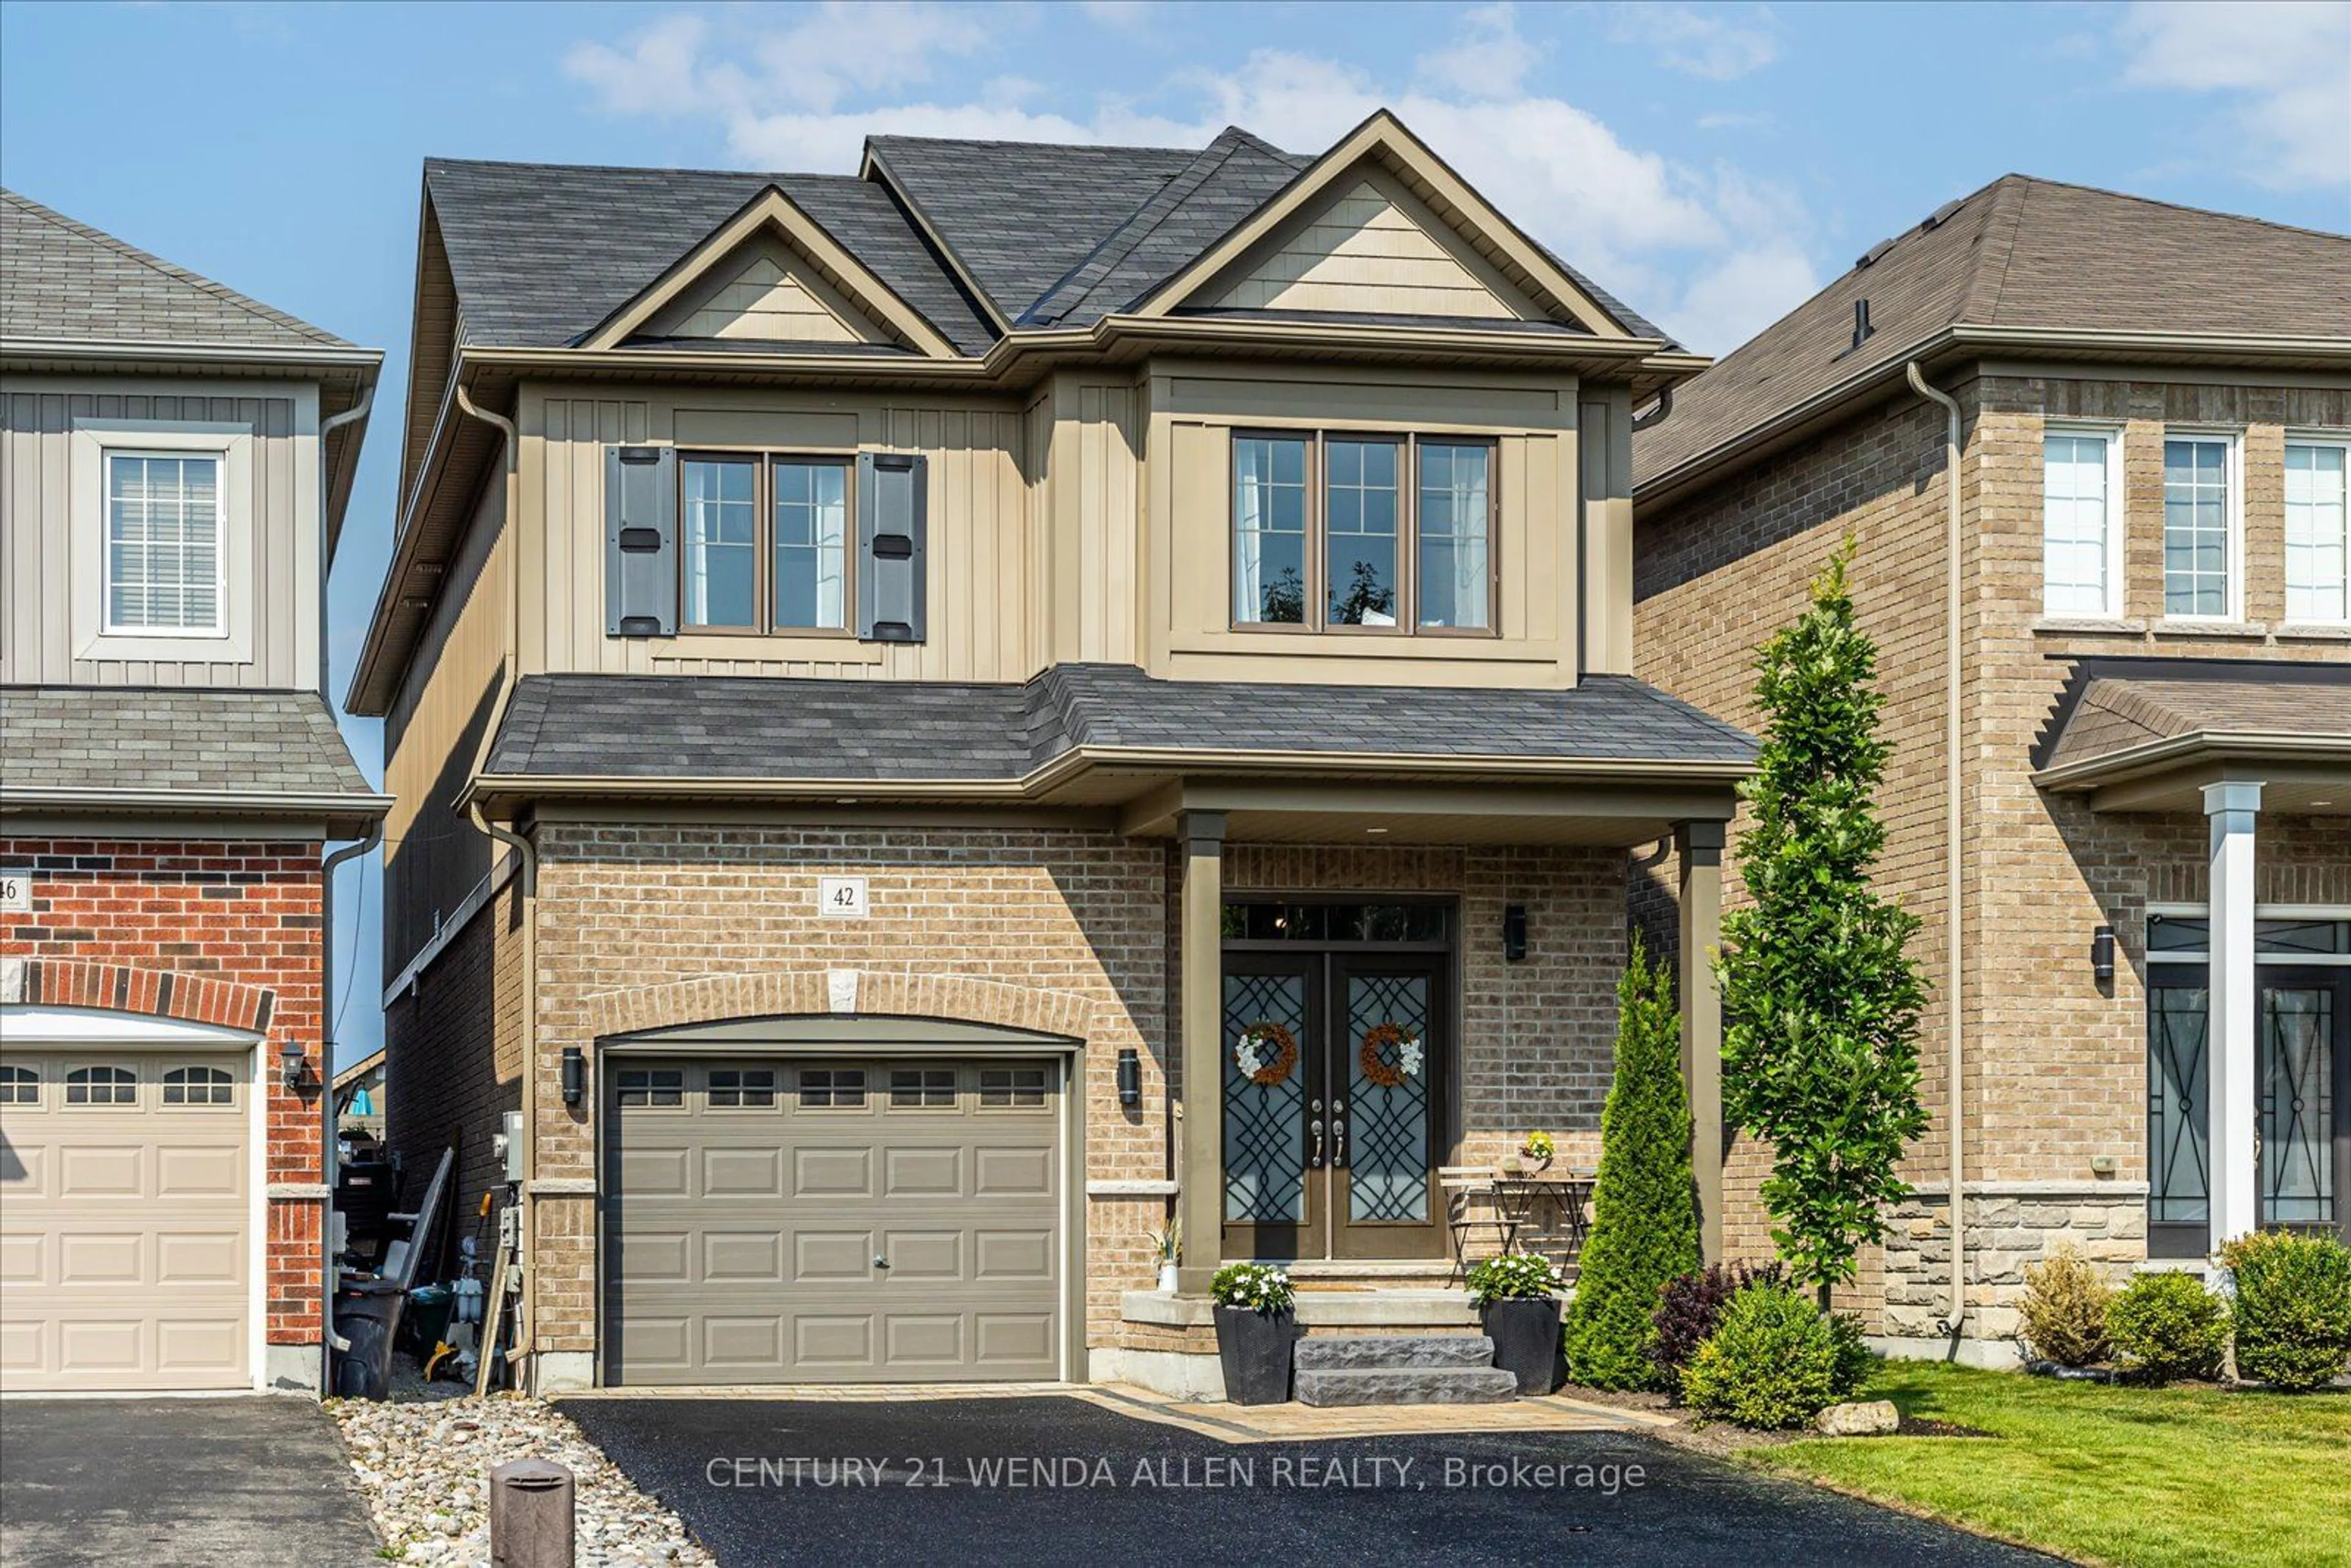 Home with brick exterior material for 42 Arthur Trewin St, Clarington Ontario L1E 0G5